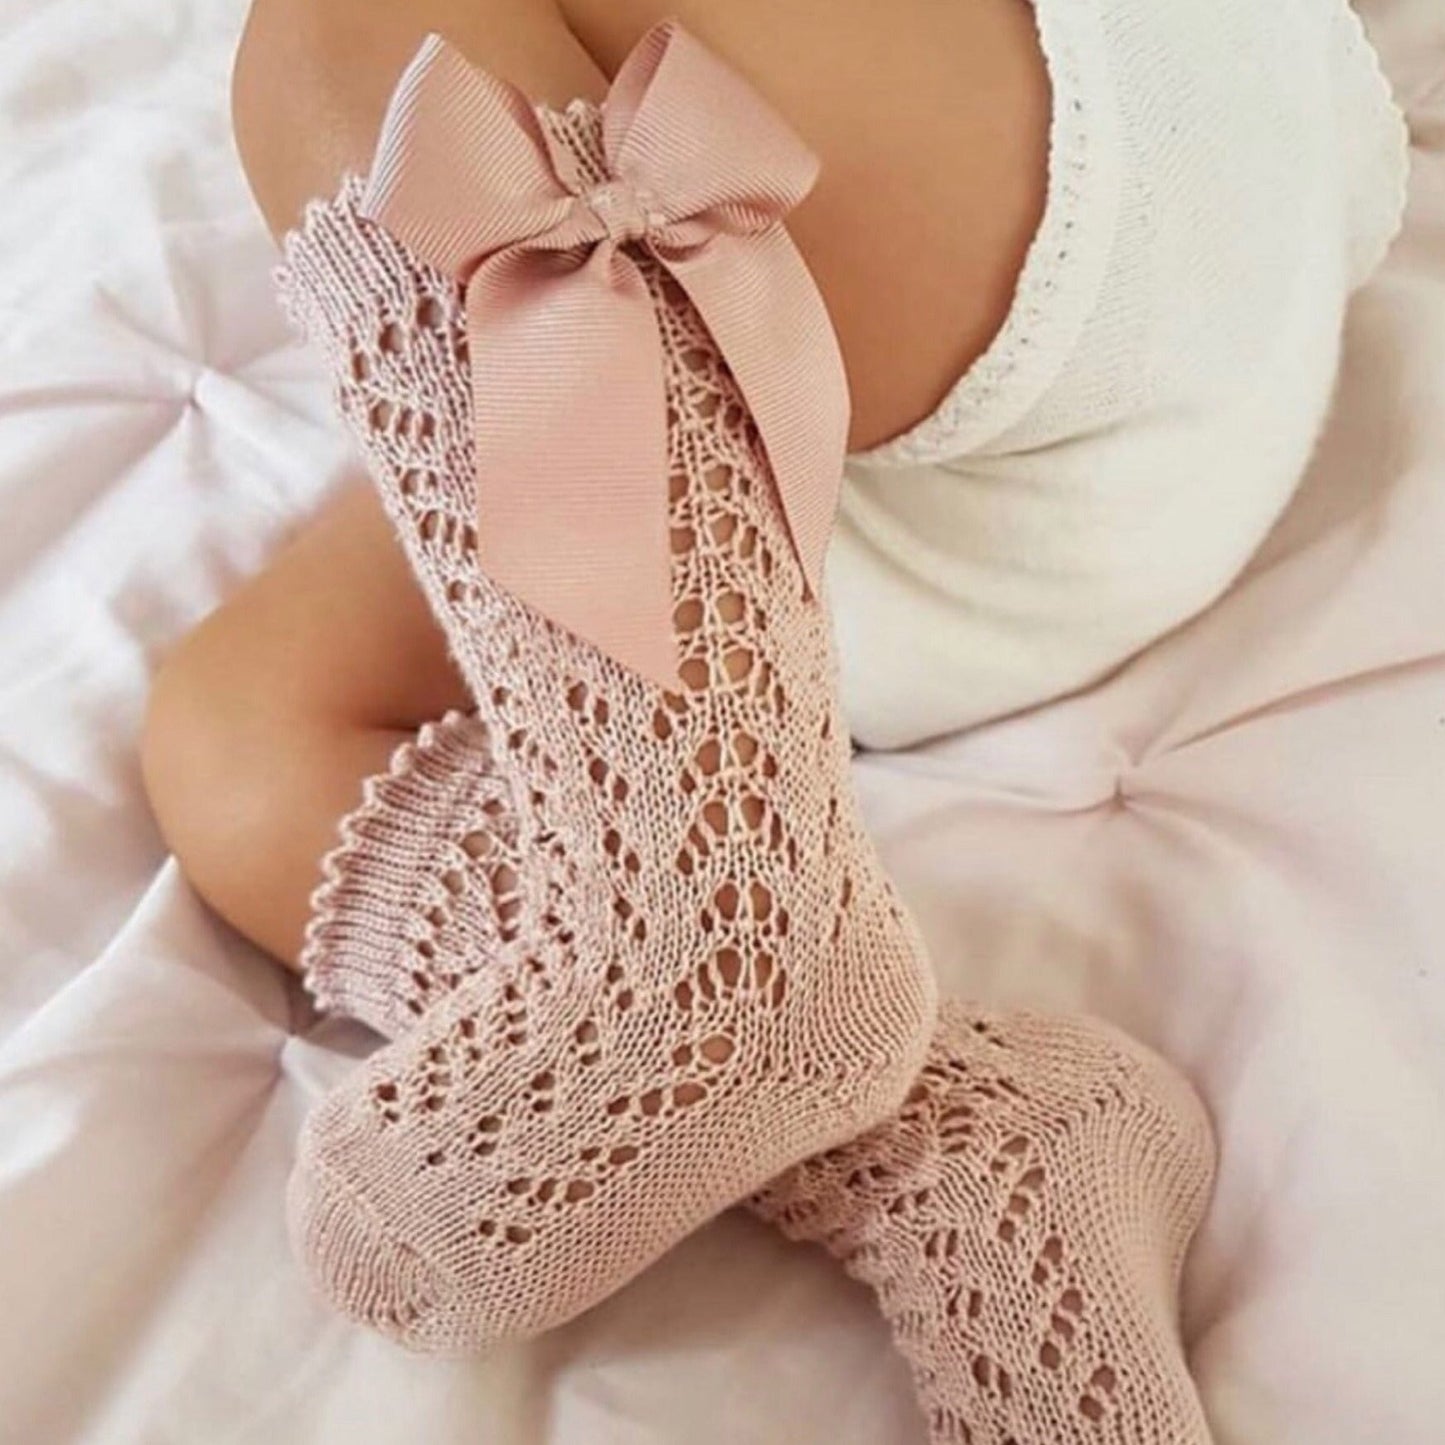 Chaussettes Hautes à Papillon pour Bébé Fille - Mon Adorable Bébé